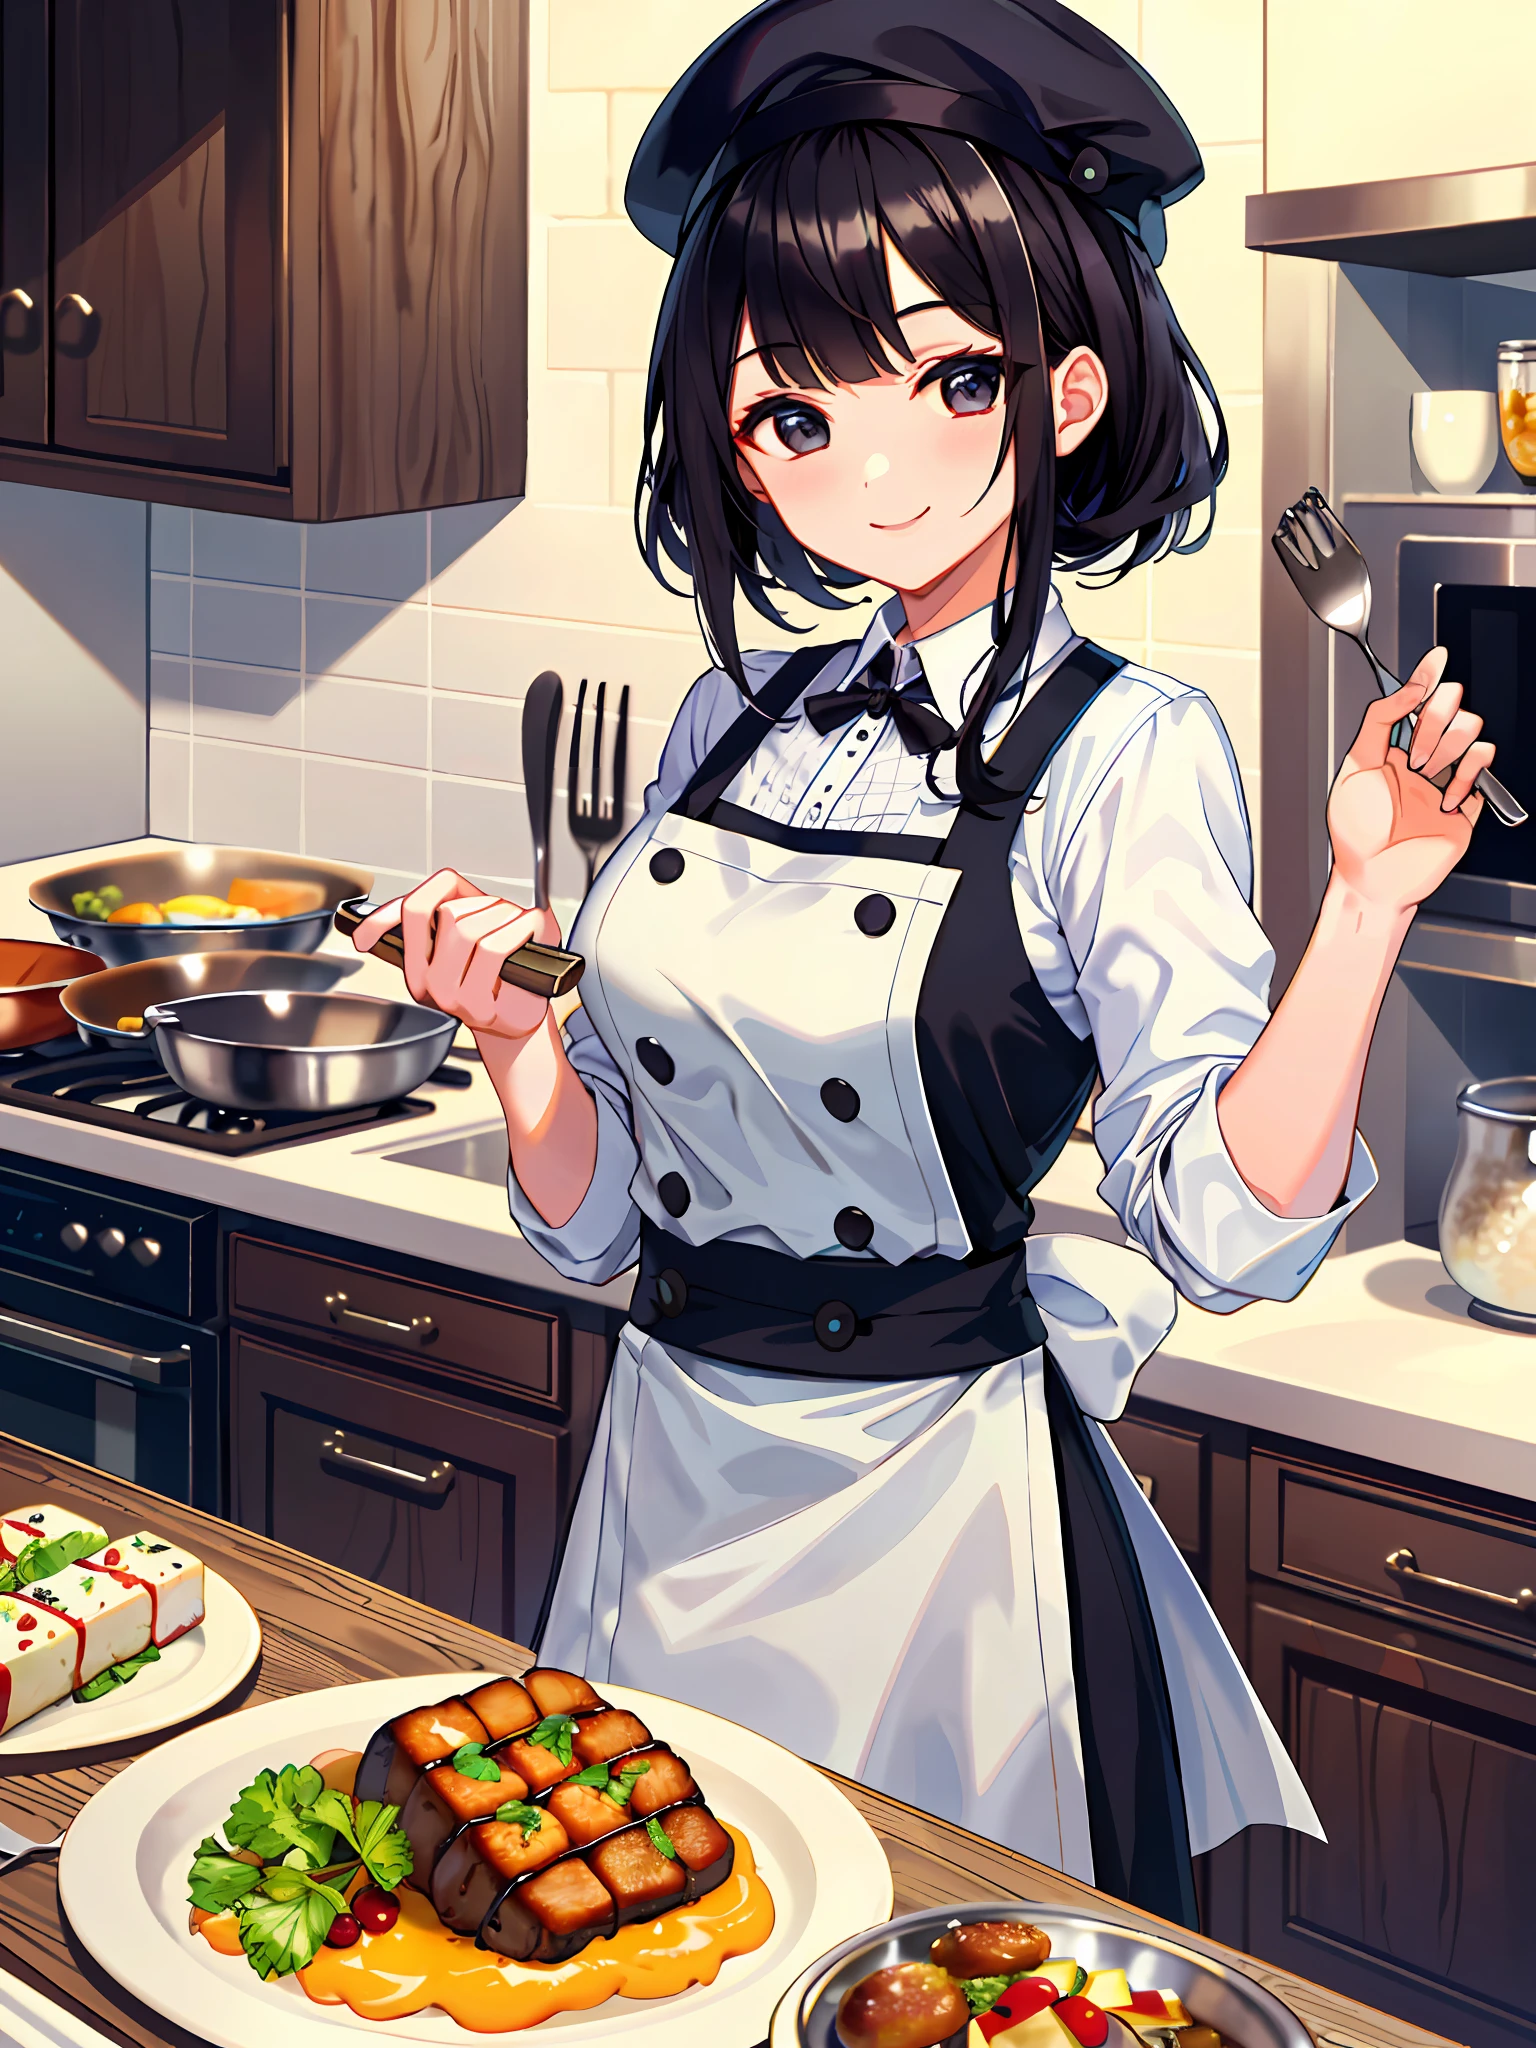 (Meisterwerk, Top Qualität, detaillierter Hintergrund, komplizierte Details), schicke Küche, 1 Mädchen, chef, Kochen, Schwarzes Haar, chef hat, chef uniform, lächeln